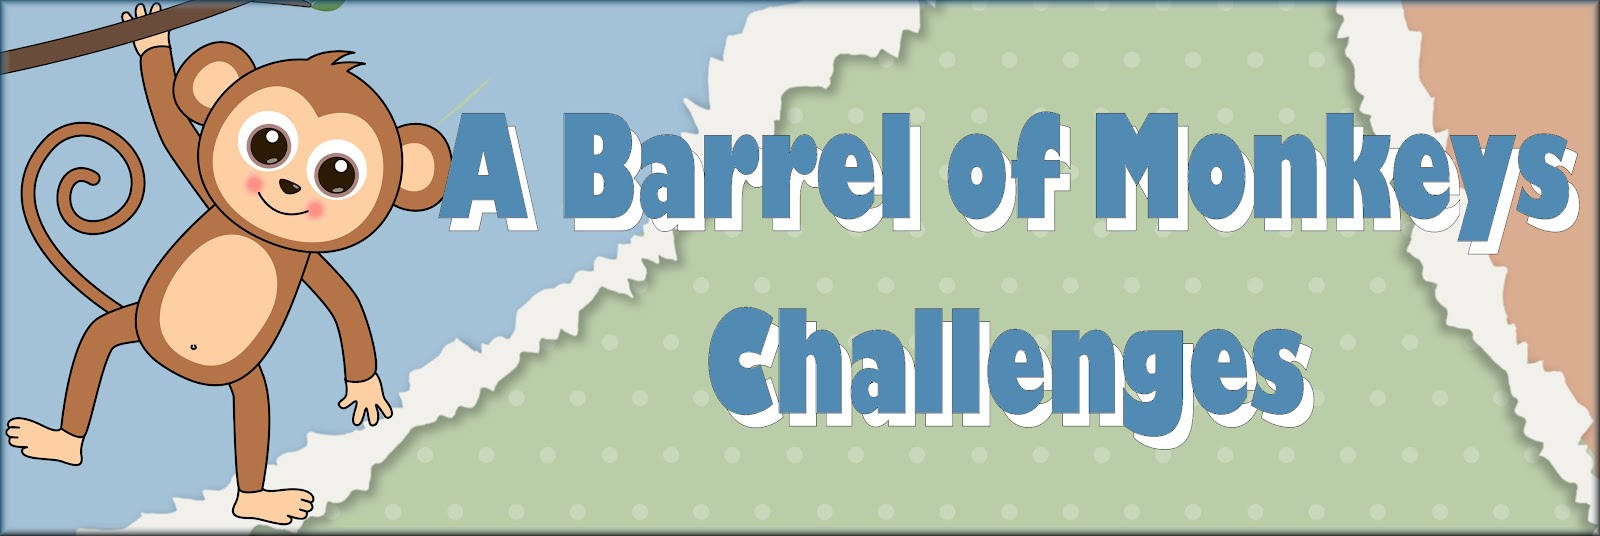 A Barrel of Monkeys Challenges